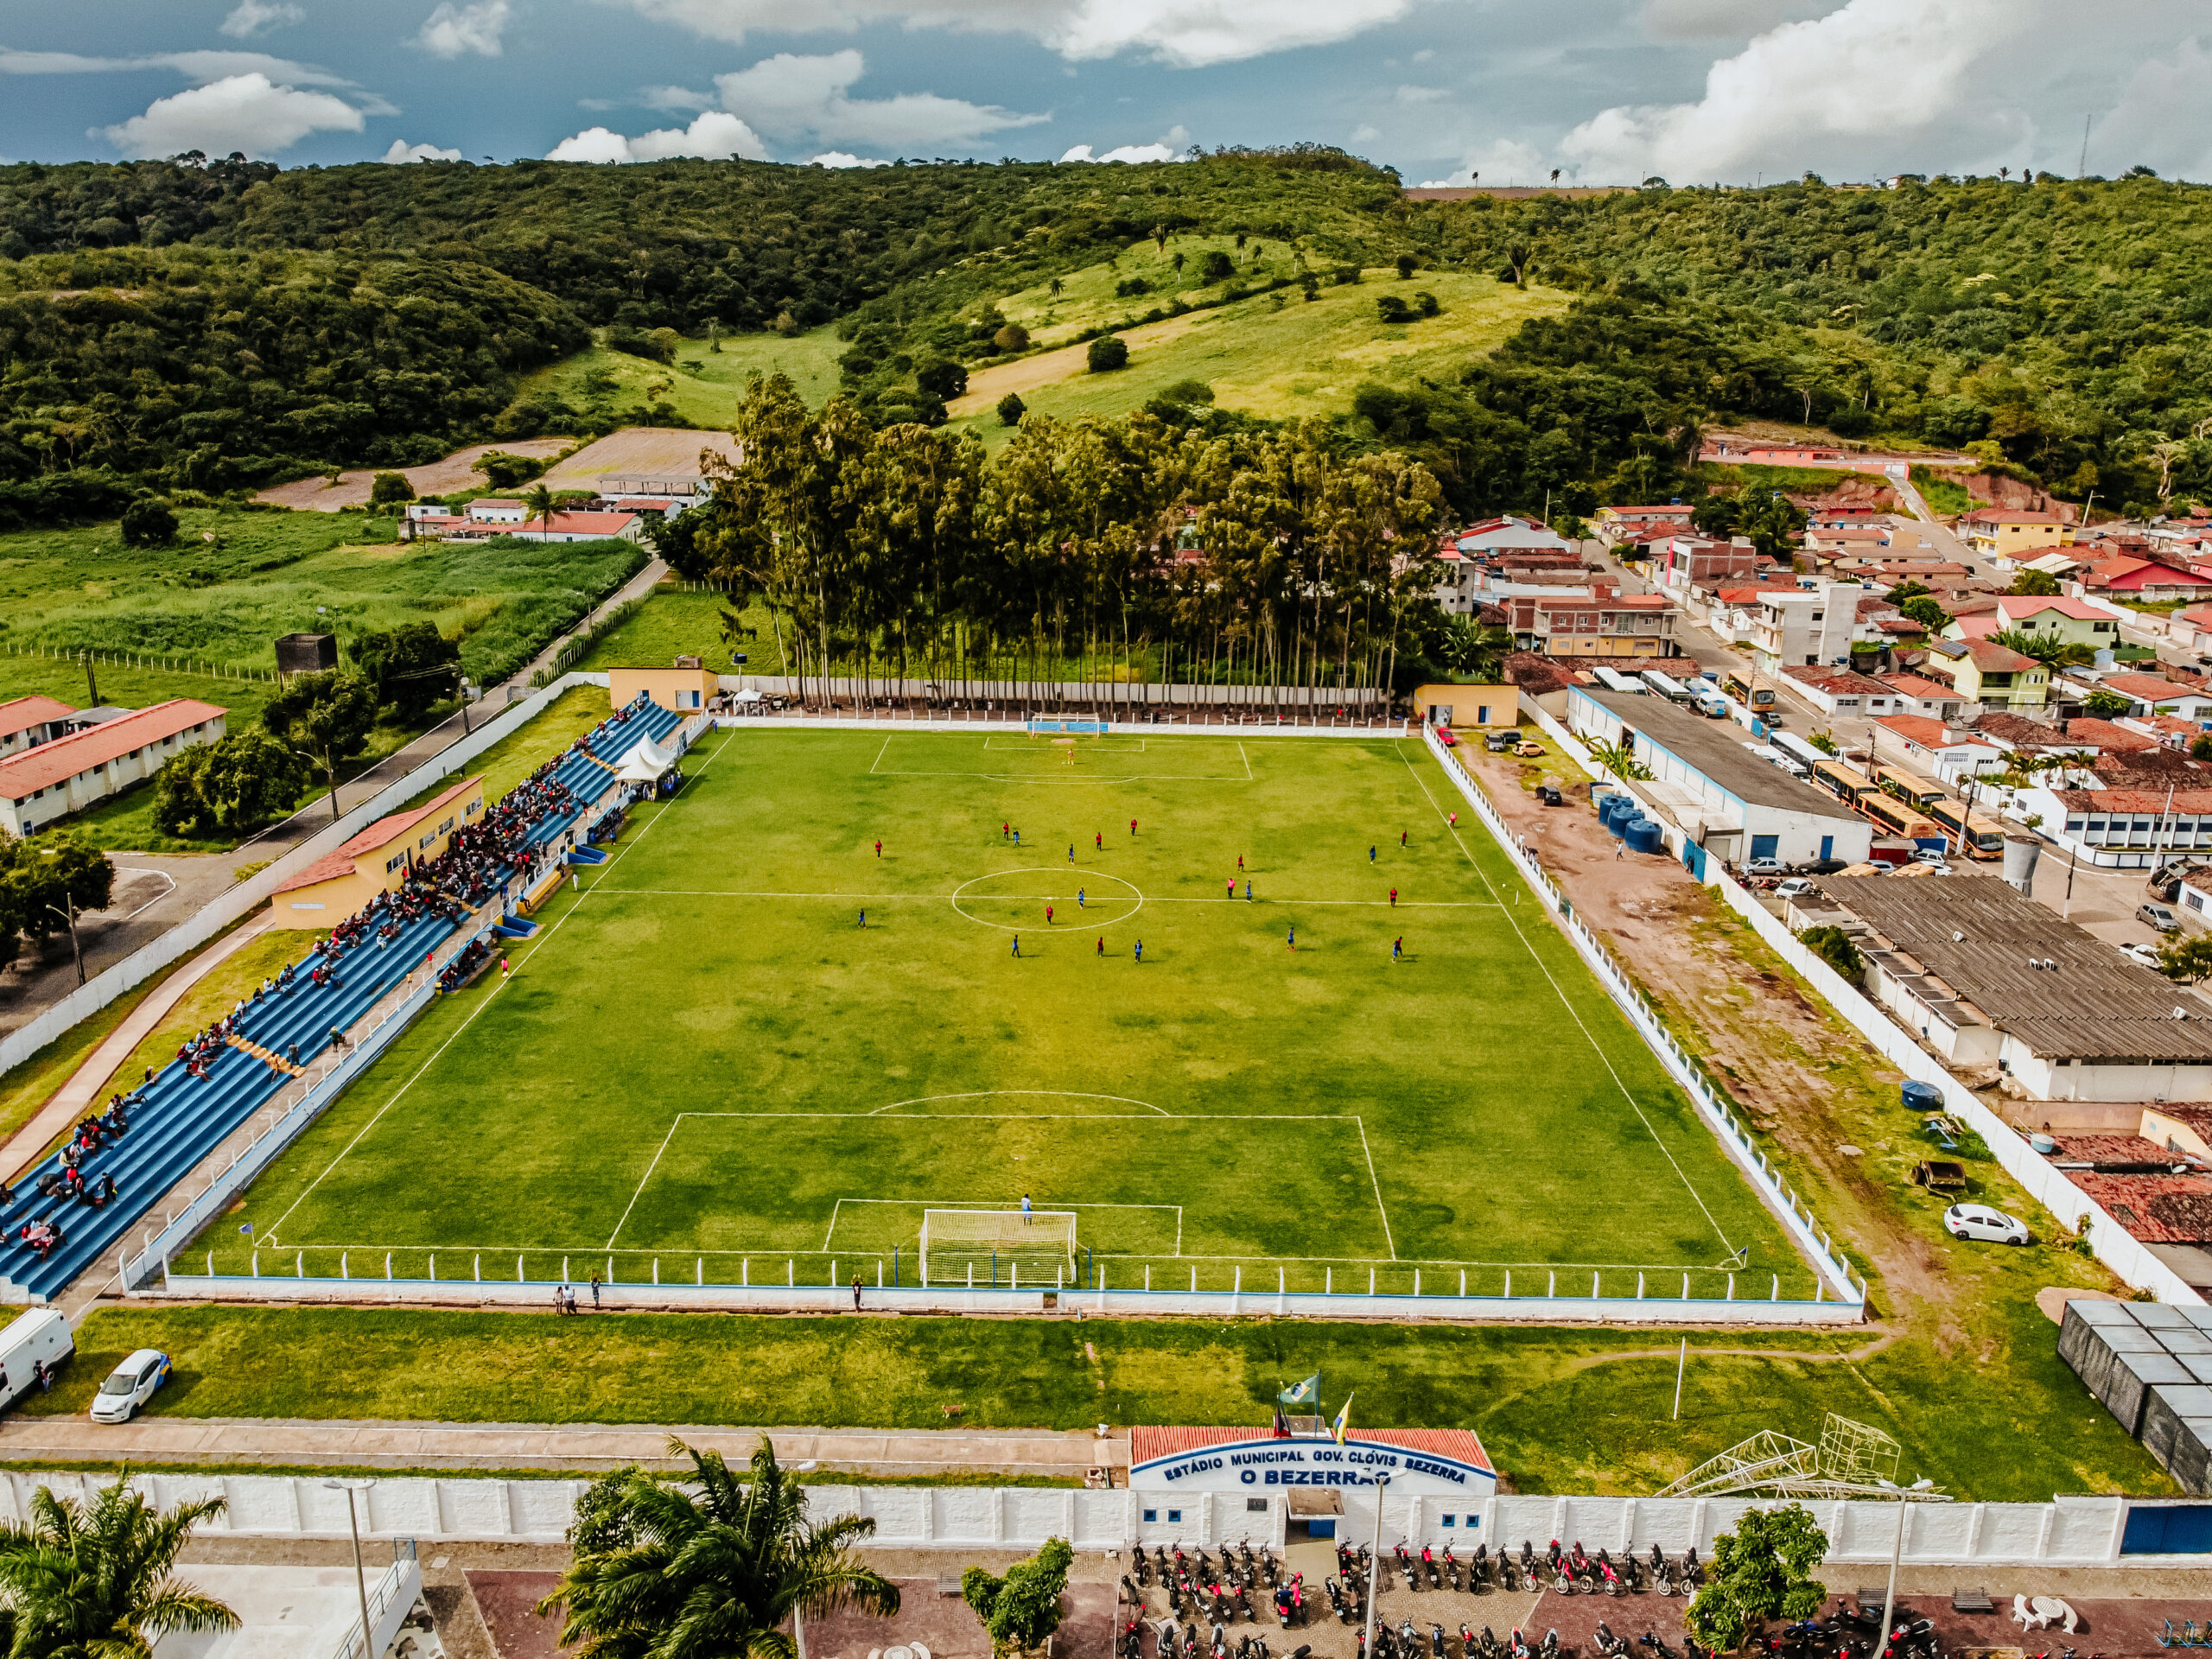 Estádio de Futebol “O Bezerrão” receberá iluminação, anunciou o Prefeito de Bananeiras